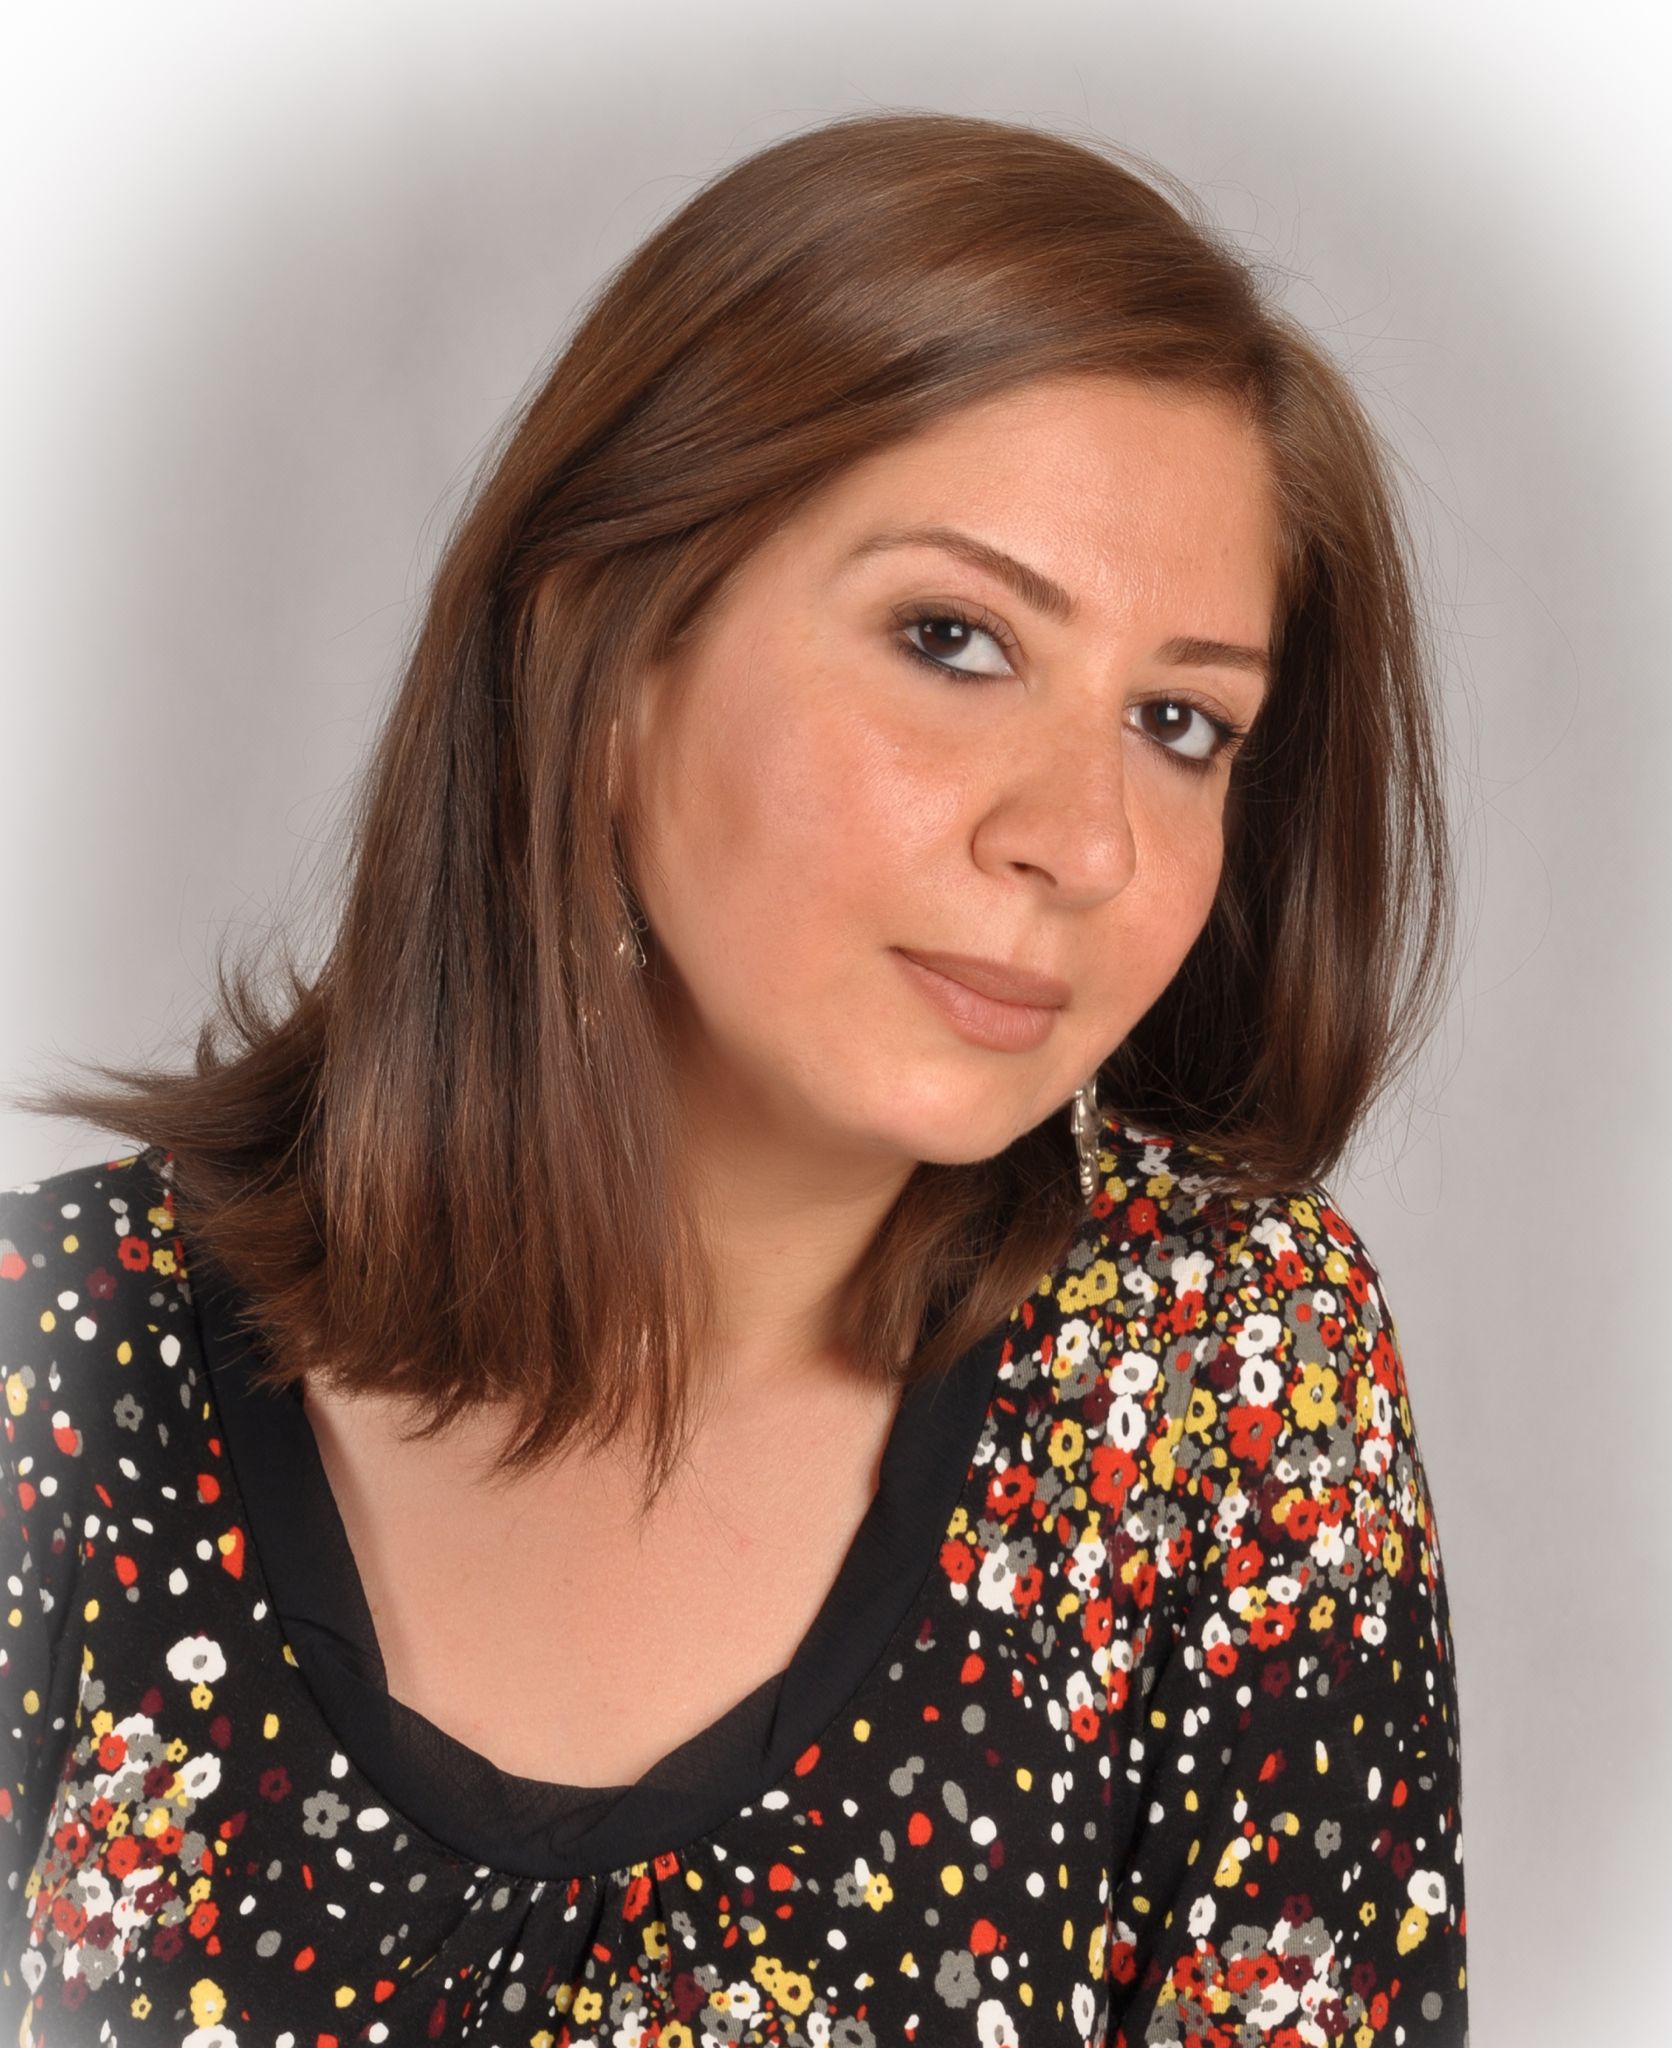 صدور رواية "زهرة" للكاتبة العراقية ميسلون فاخر